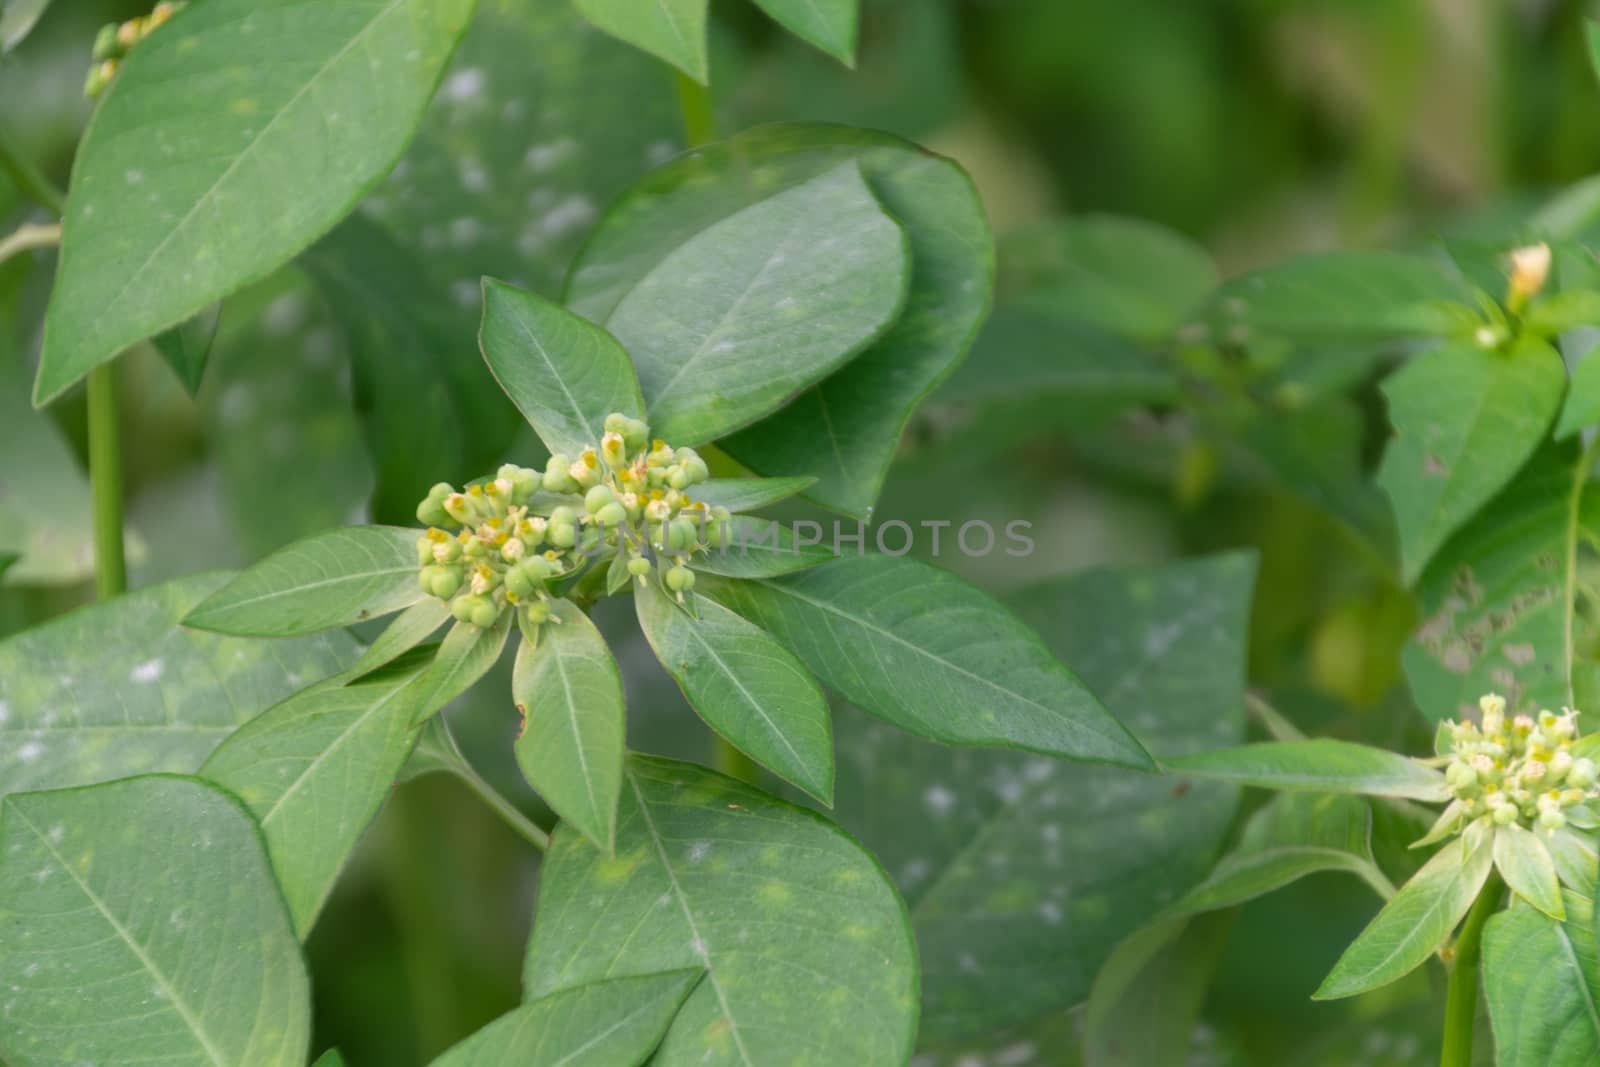 Euphorbia heterophylla grass flower in nature garden  by Banglade